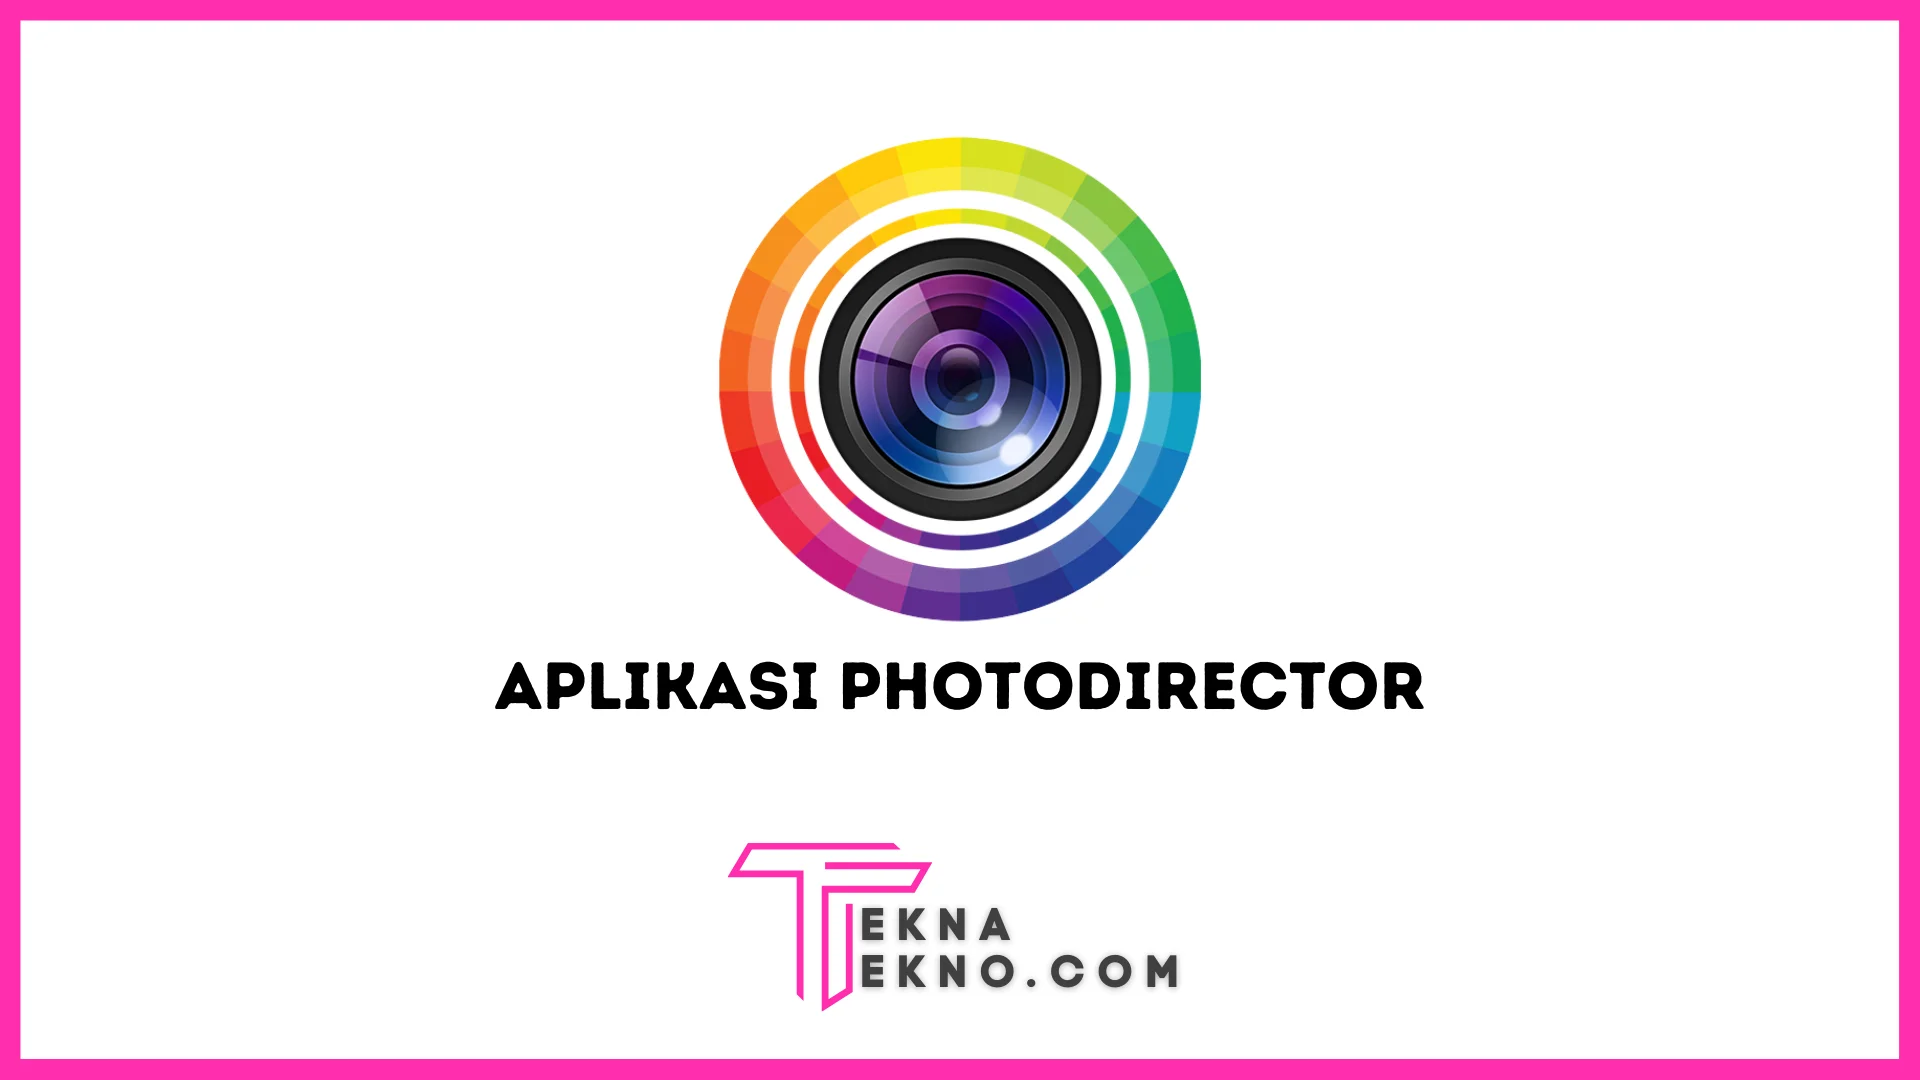 Aplikasi PhotoDirector: Pengertian, Spesifikasi dan Fiturnya